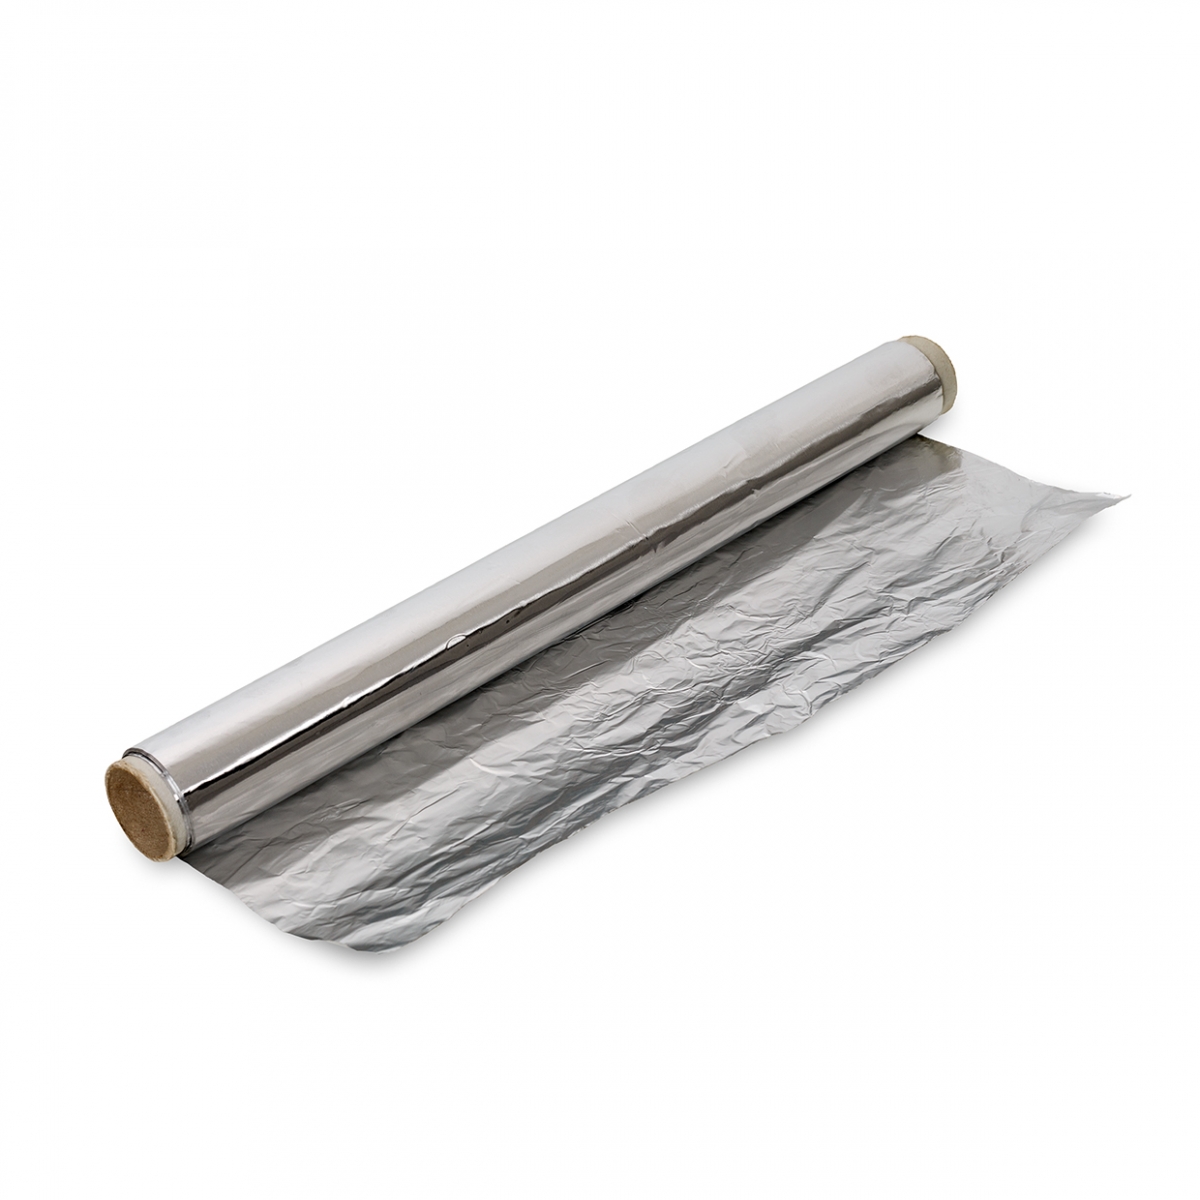 Imagen en la que se ve un rollo de papel de aluminio